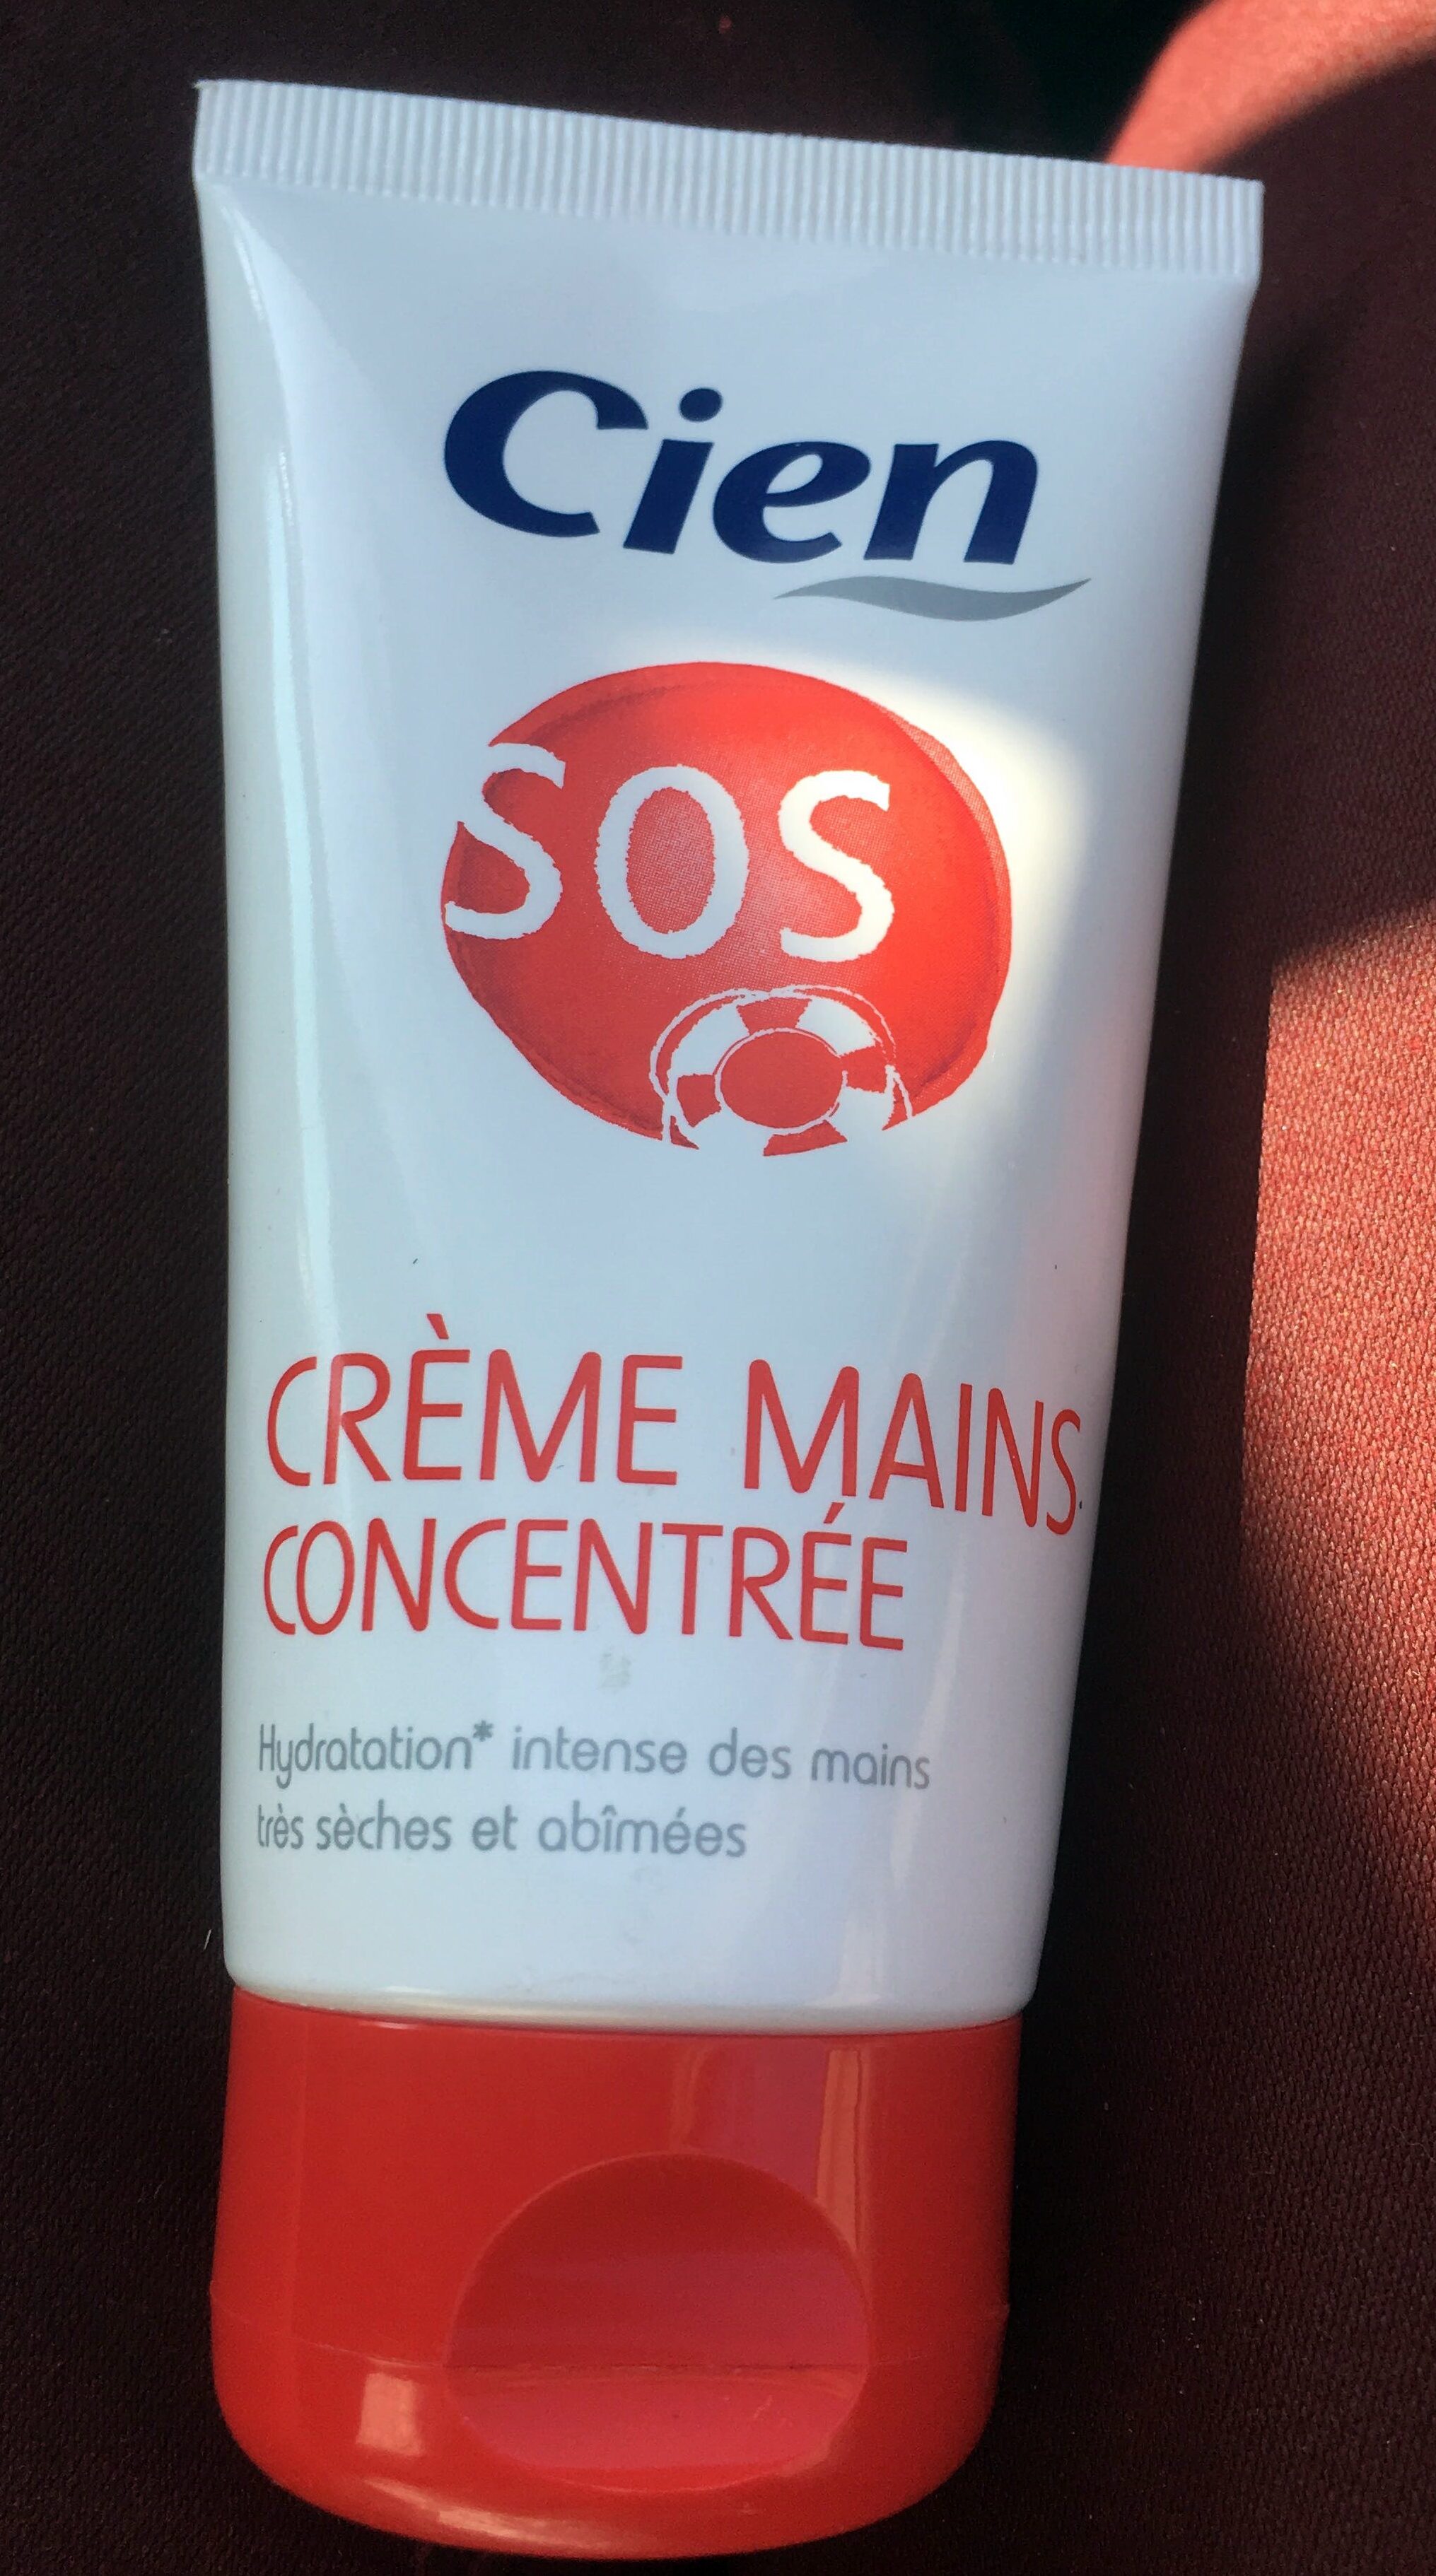 Crème mains concentrée - Product - fr